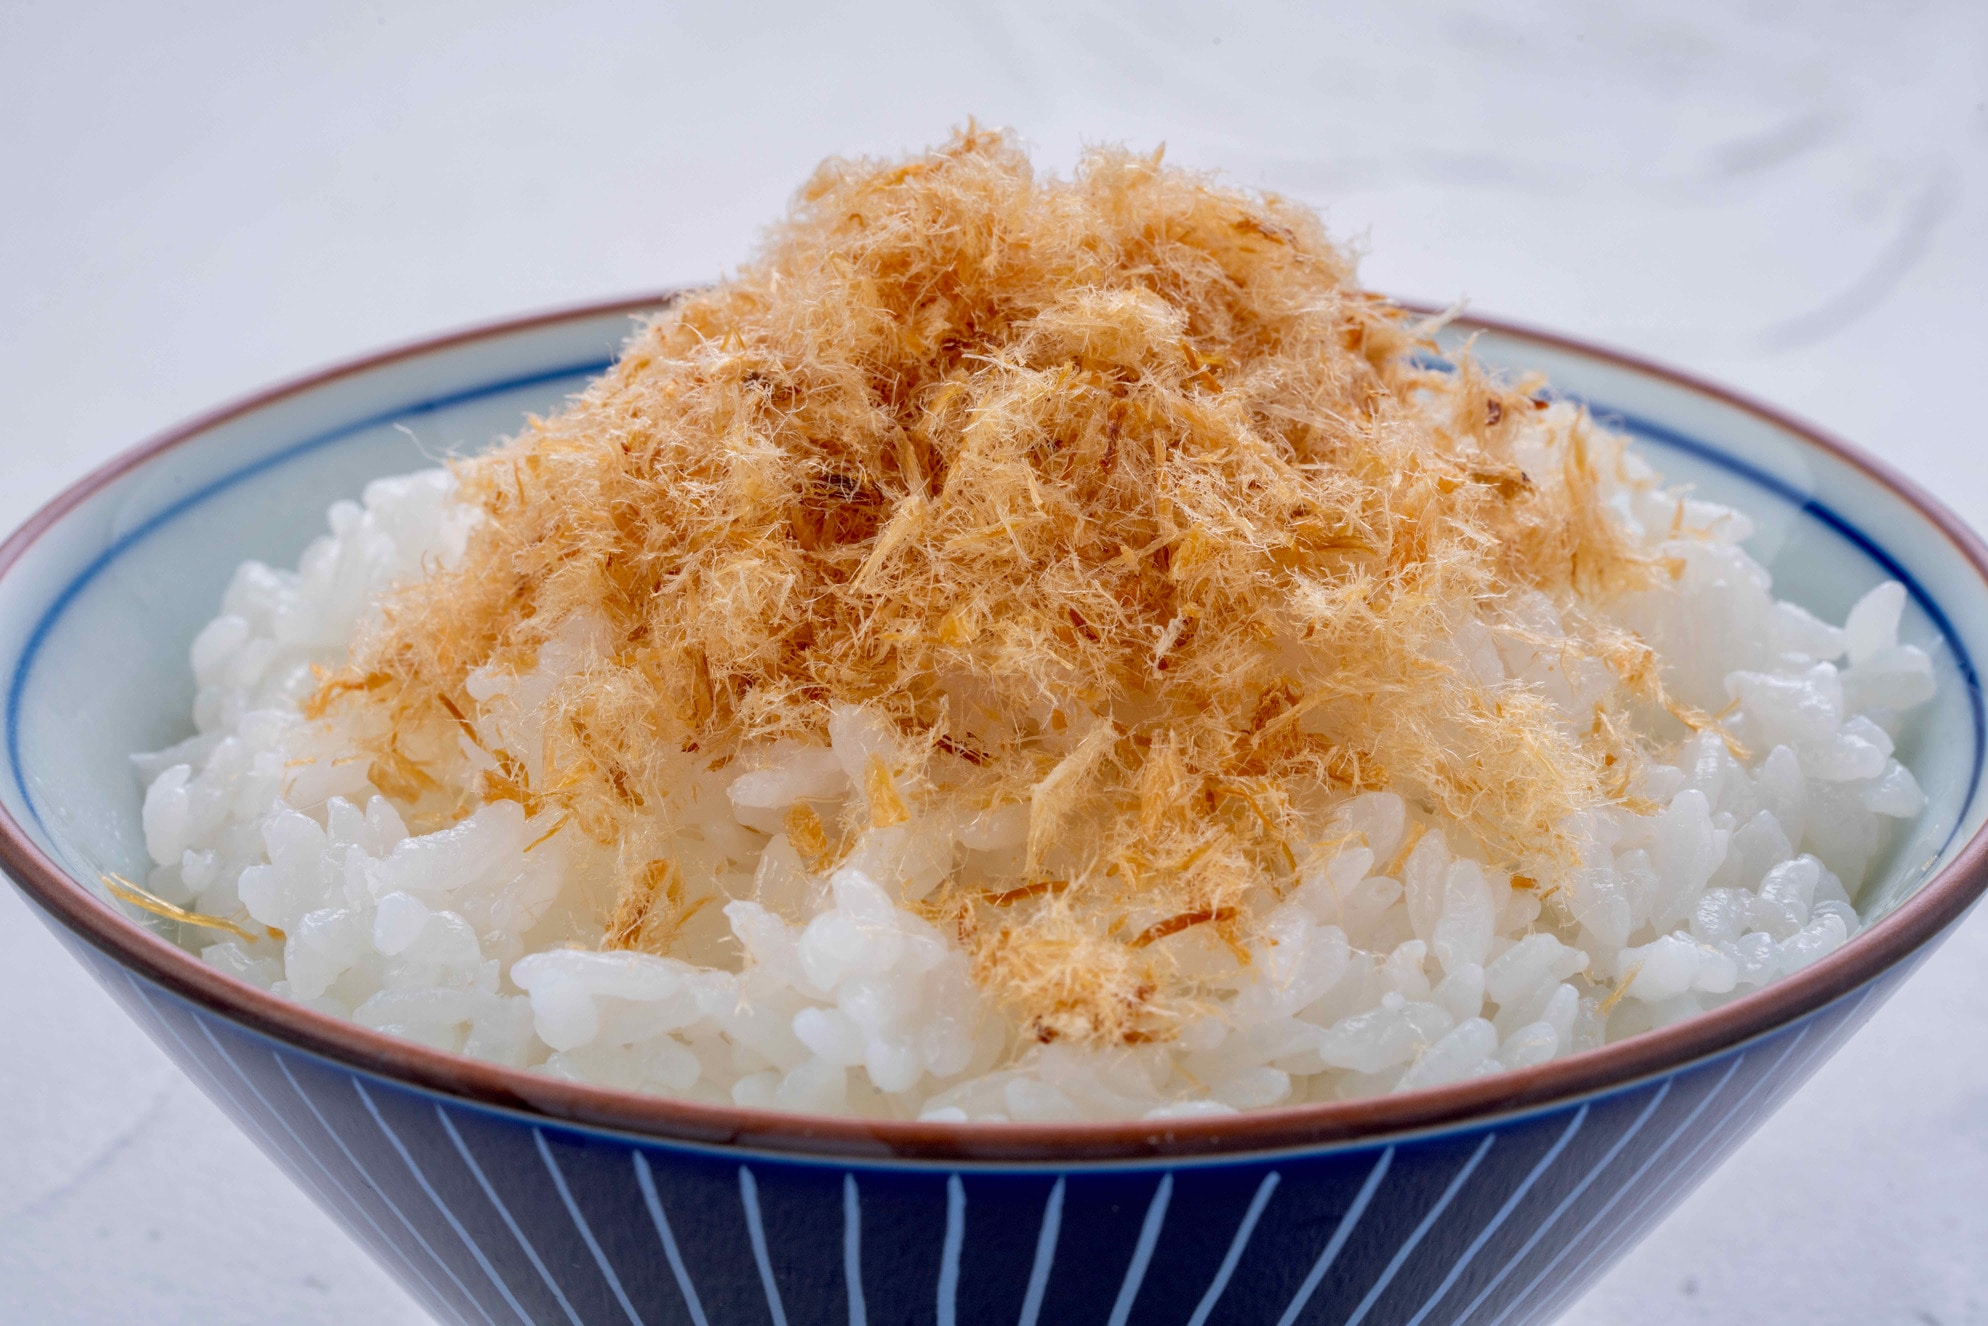 炊きたてご飯の上に吉村燻製工房の雪トバをかける,鮭とばご飯